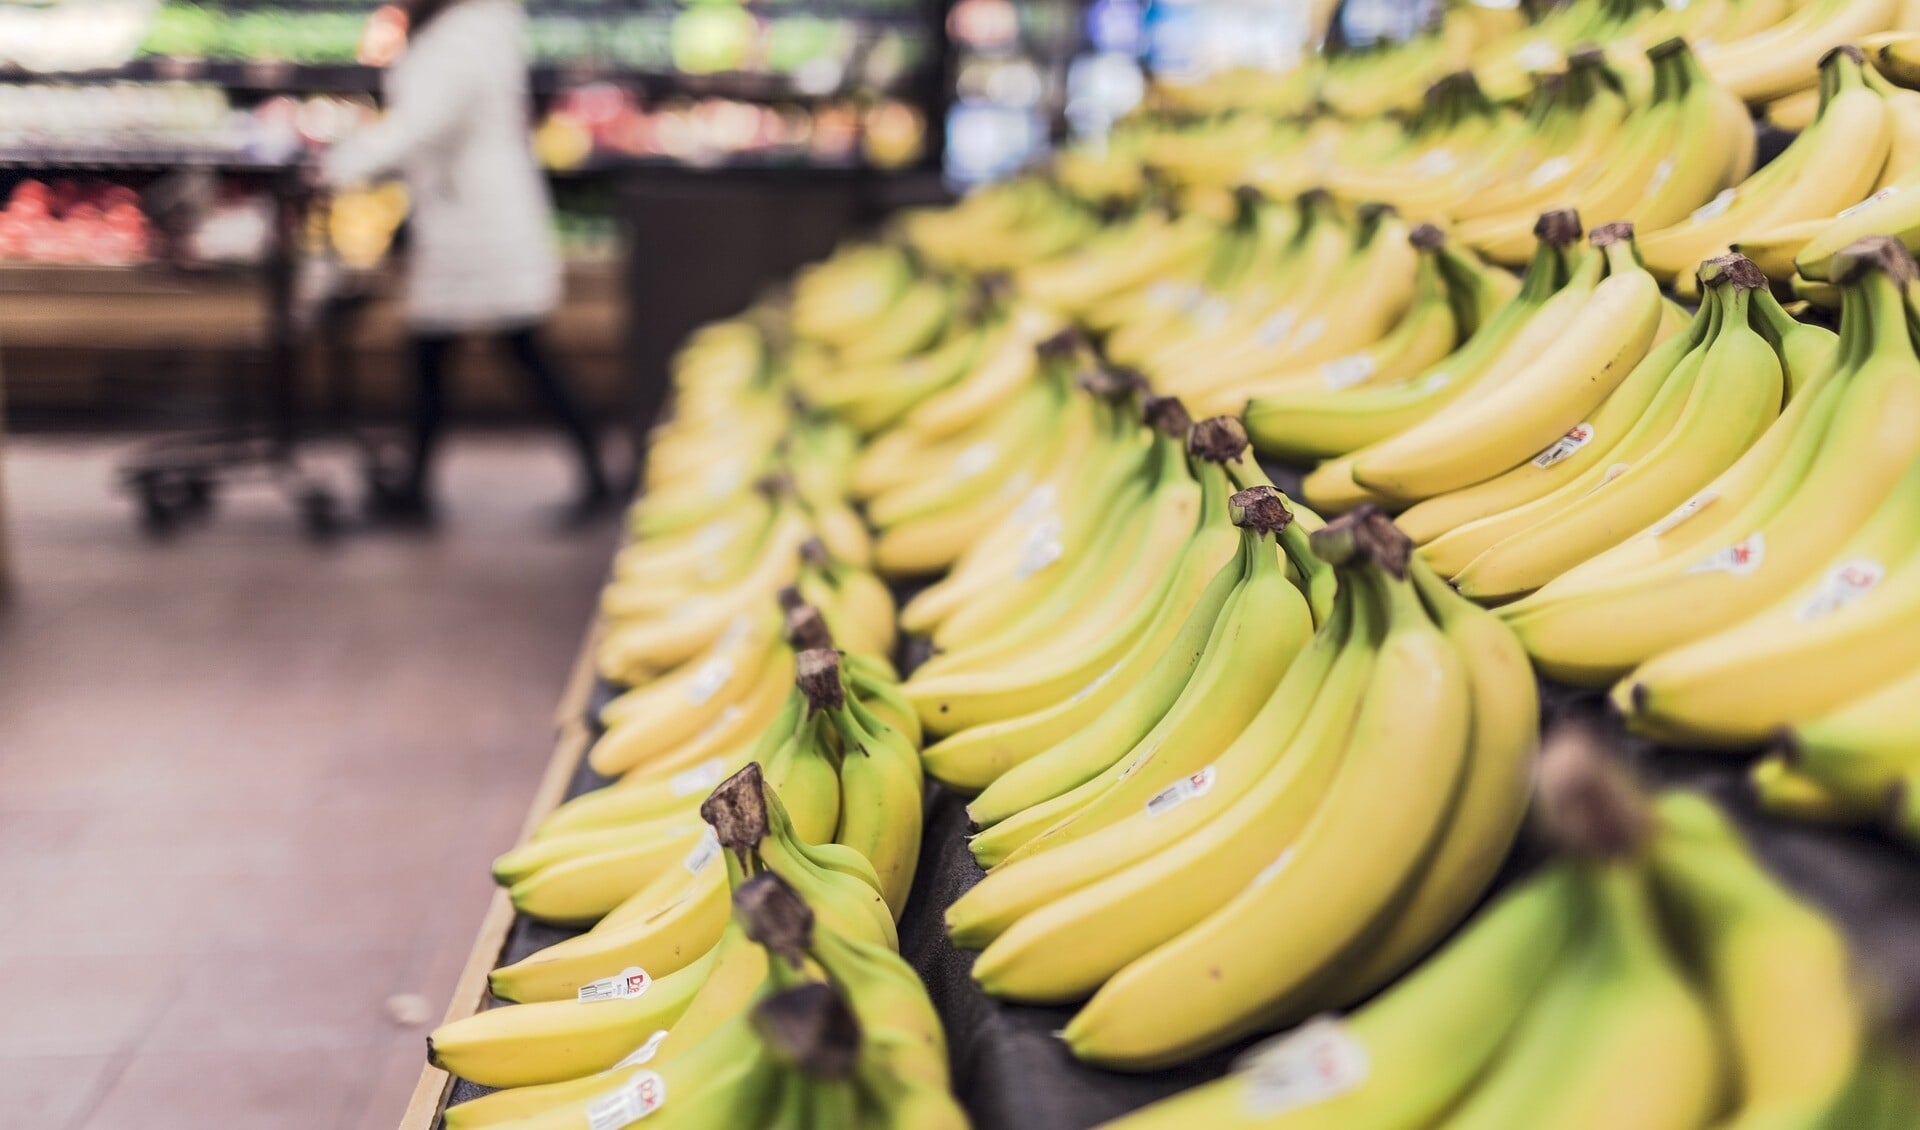 Gemiddeld stegen de prijzen van voedingsmiddelen in de winkels de laatste 10 jaar zo’n 20 procent. 